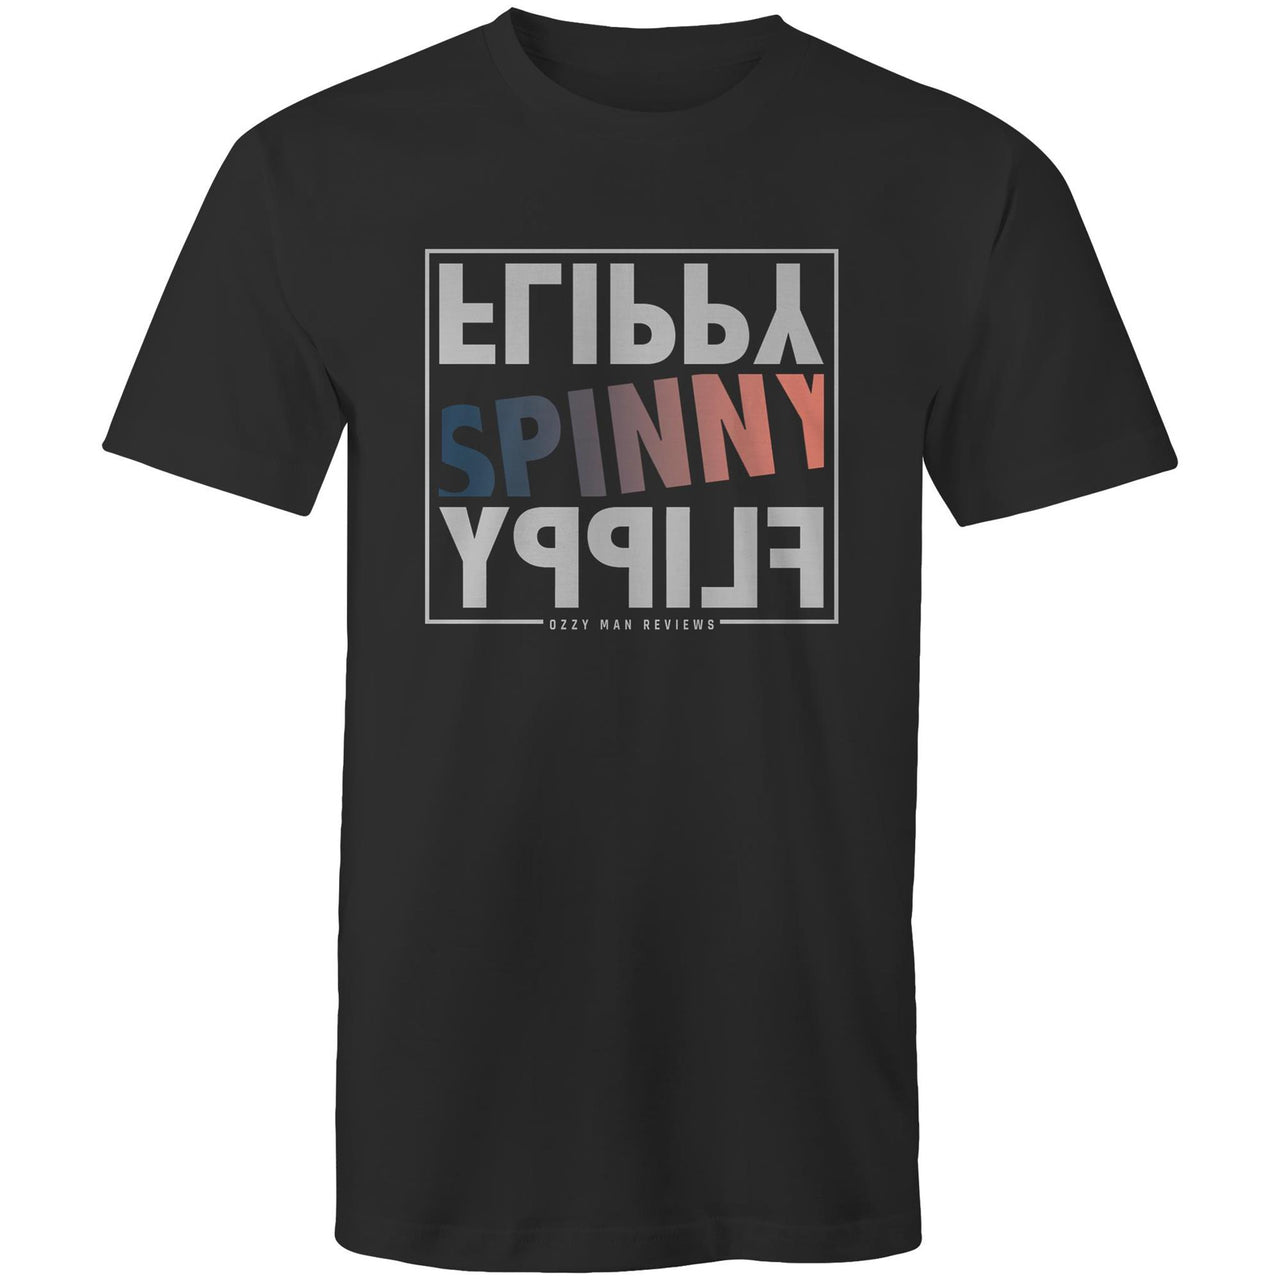 Flippy Spinny Flippy! T-Shirt - MEN'S